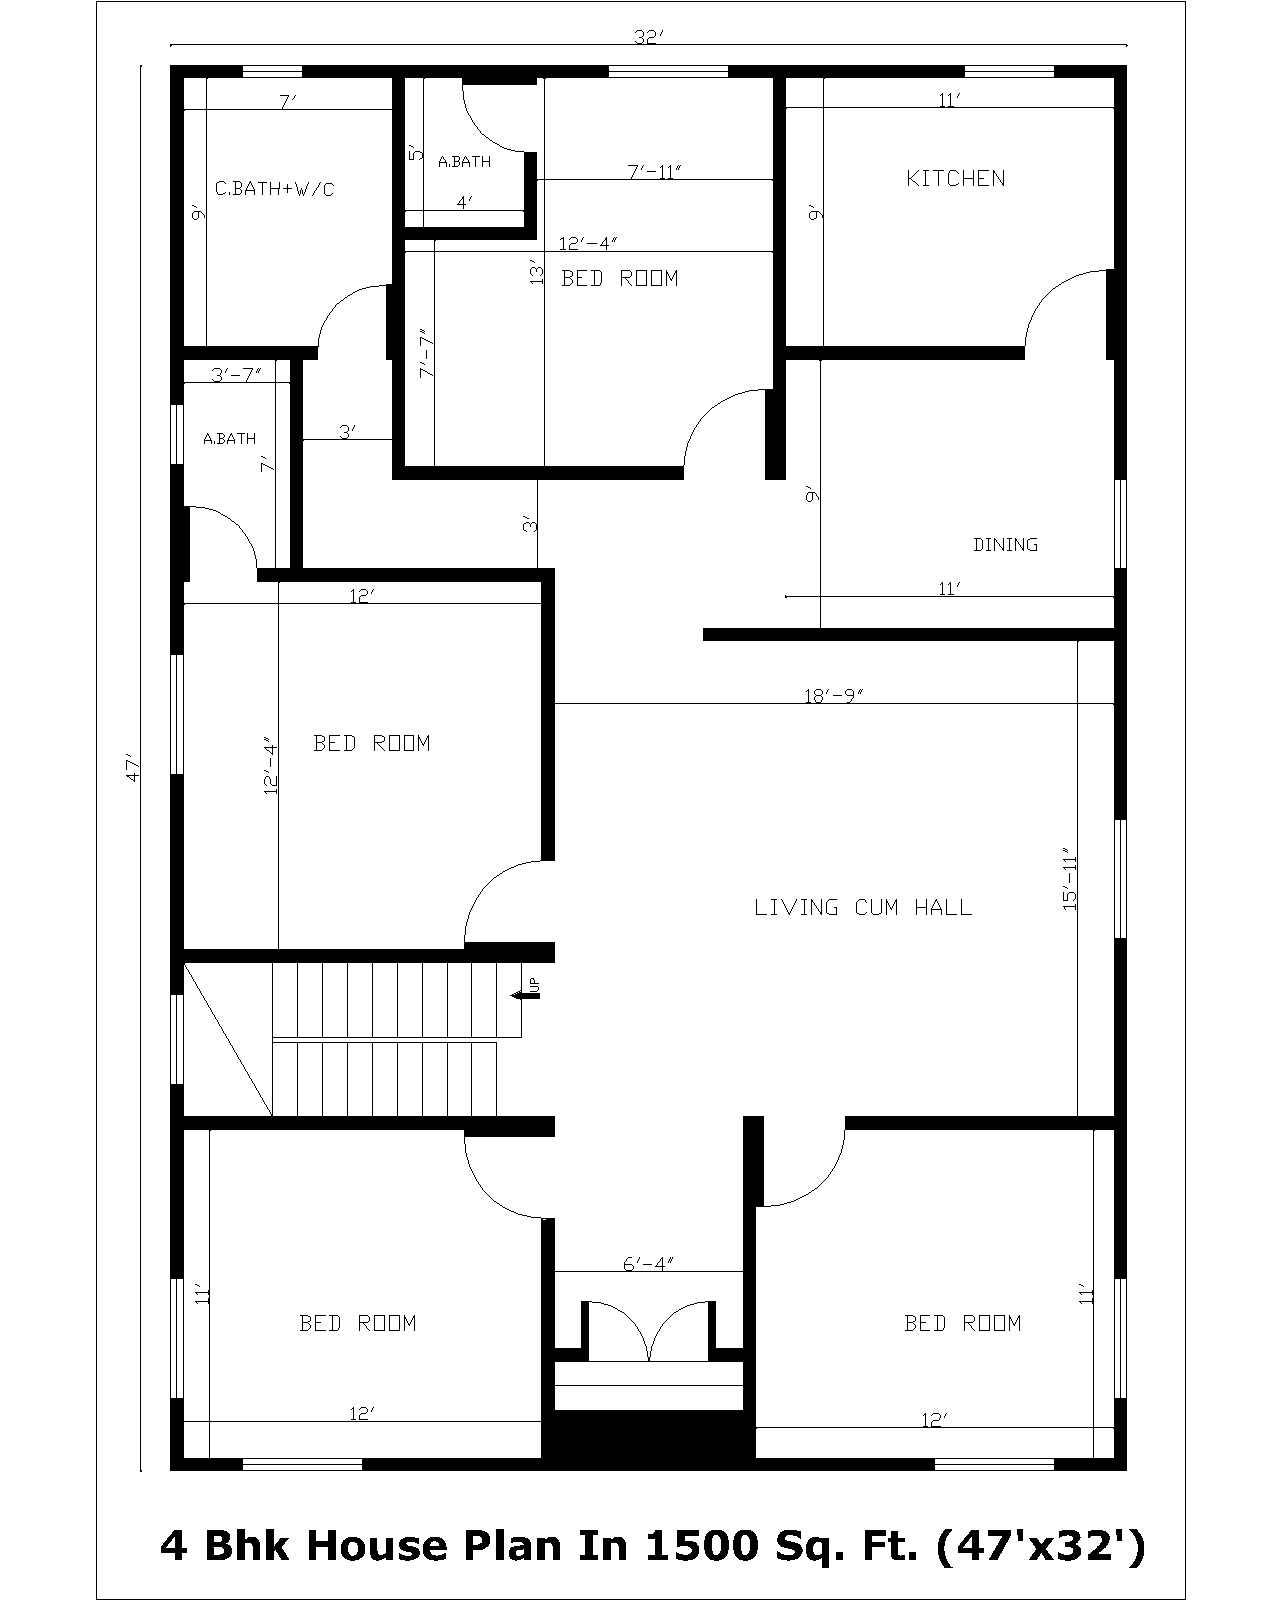 4 Bhk House Plan In 1500 Sq. Ft. (47'x32') | 4 Bhk Gharka Naksha In 1500 Sq. Ft.(47'x32')